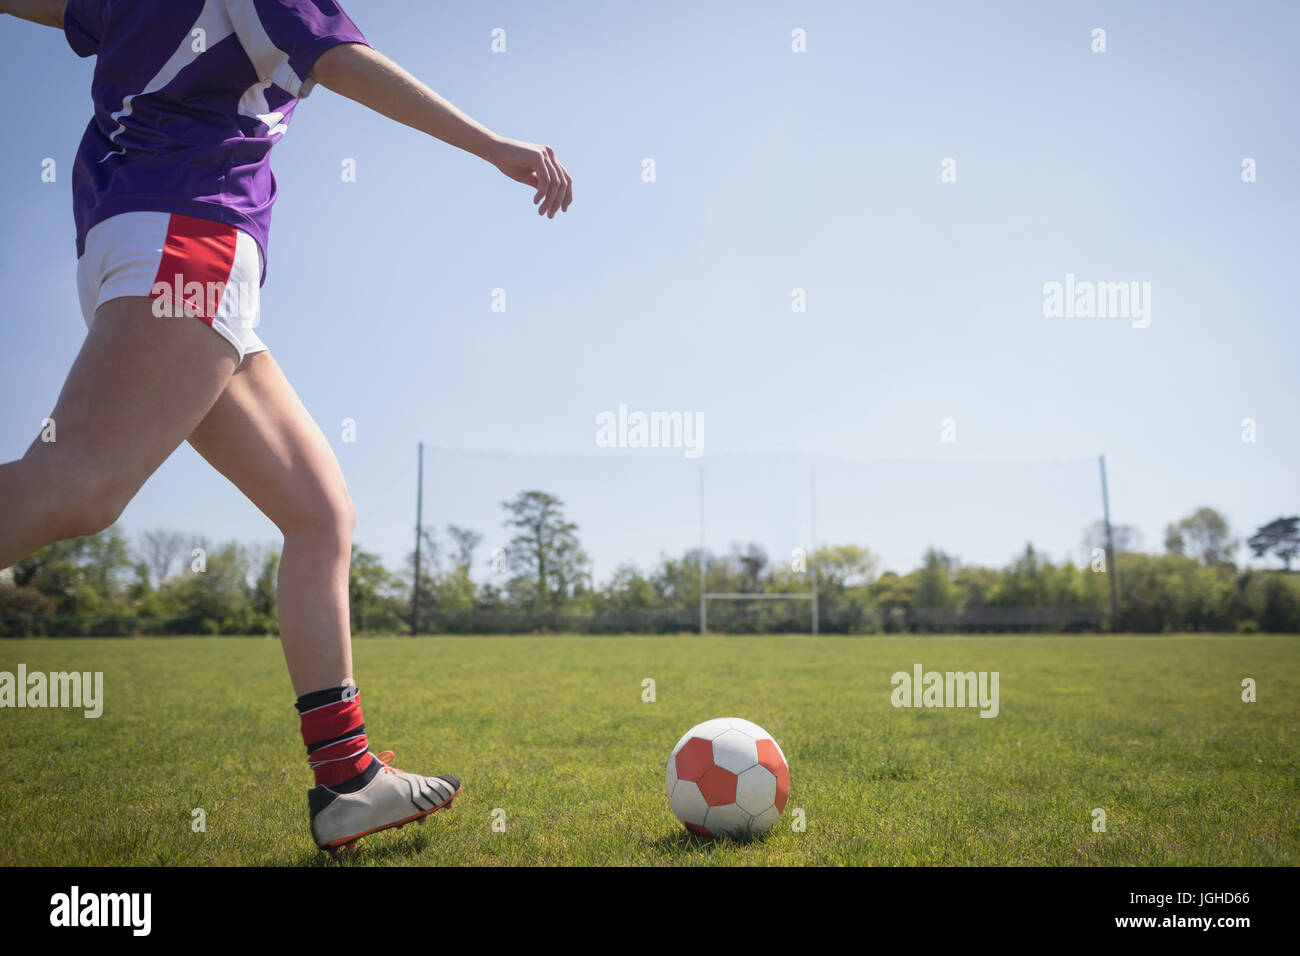 La section basse de femme jouant au football sur terrain contre ciel clair Banque D'Images